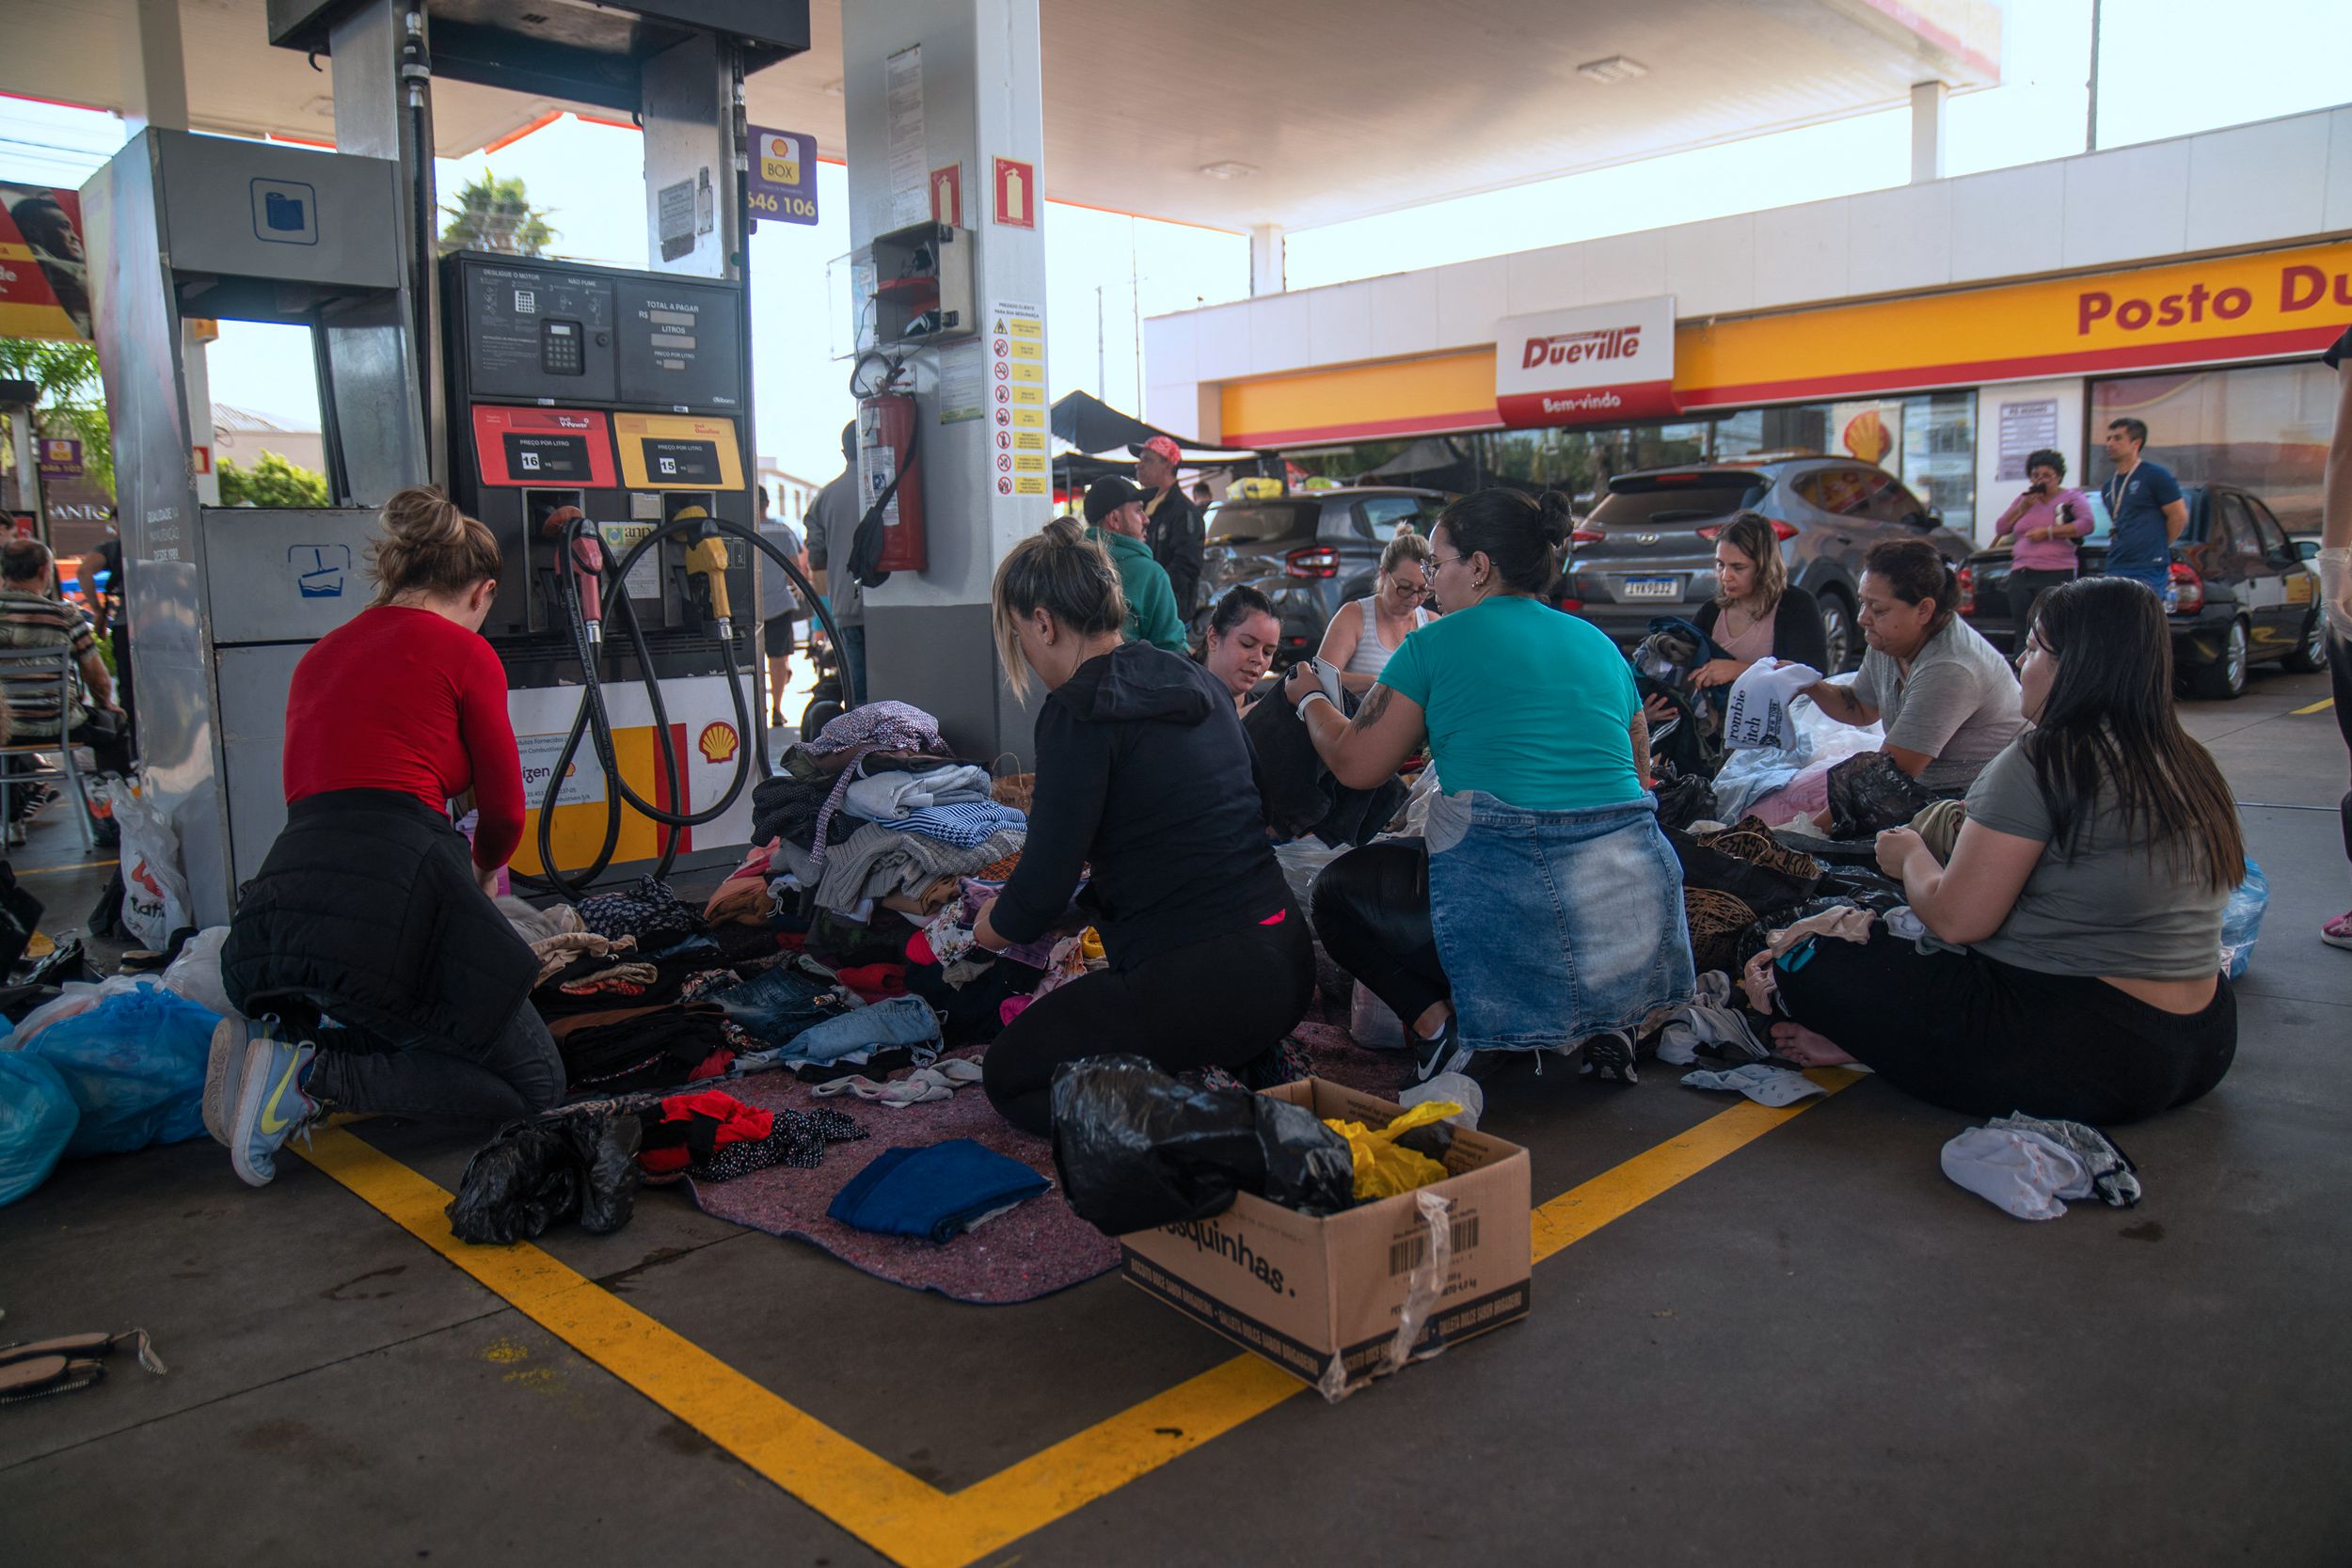 Ảnh chụp hôm 05/05/2024 tại một trạm xăng ở thành phố Porto Alegre, tiểu bang Rio Grande do Sul, Brazil, các tình nguyện viên cung cấp thực phẩm, chăm sóc y tế và quần áo cho những người dân bị ảnh hưởng bởi thiên tai. (Ảnh: Carlos Fabal/AFP via Getty Images)